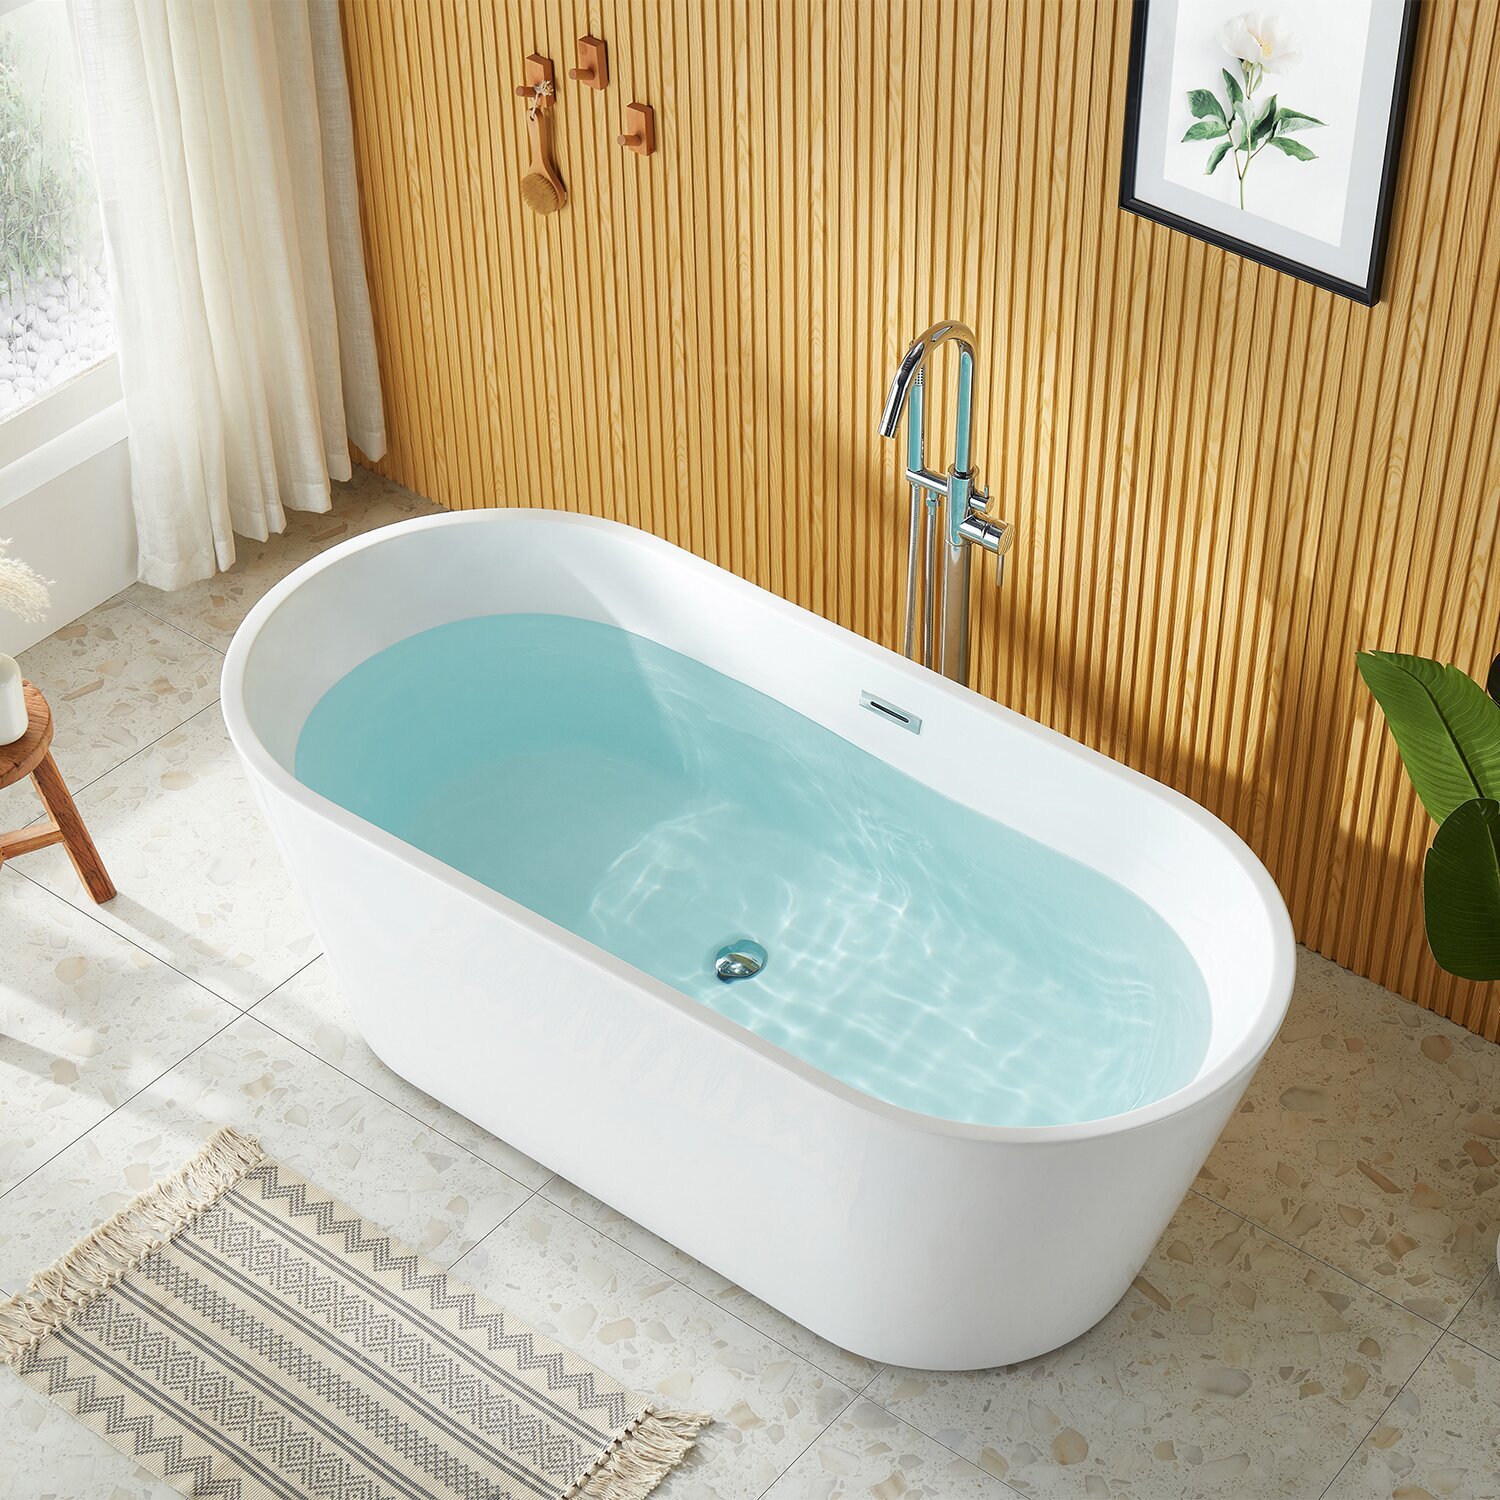 Slightly more modern freestanding corner tub